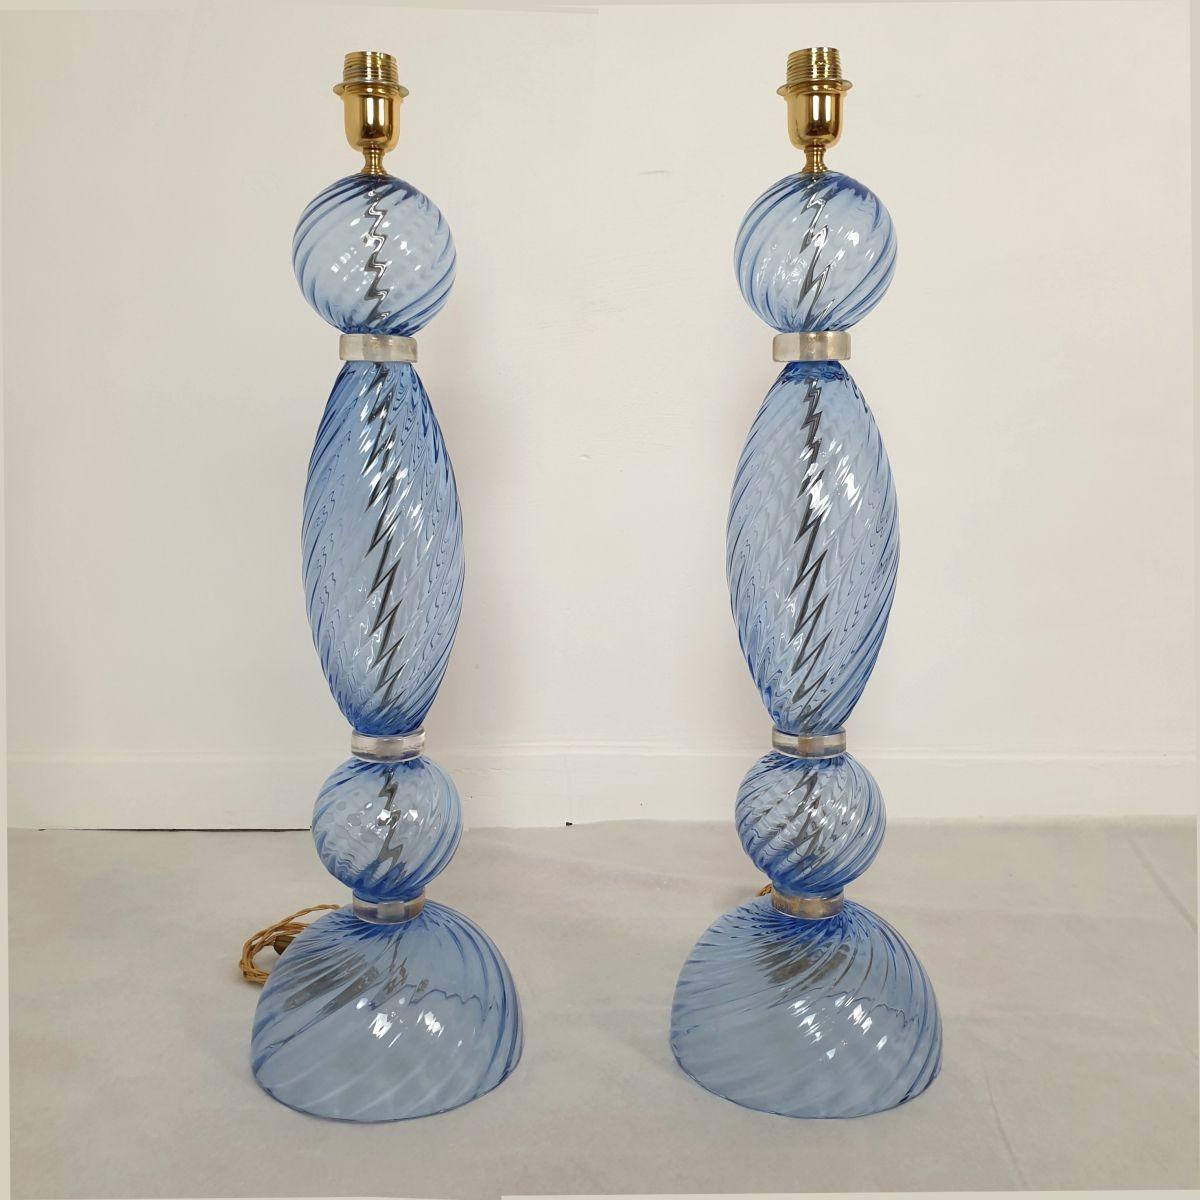 Paire de lampes en verre bleu de Murano, style Seguso, Italie, années 1980.
Les grandes lampes de table néoclassiques sont fabriquées en verre de Murano de couleur bleu clair avec des accents d'or clair et des montures en laiton.
Les lampes ont une